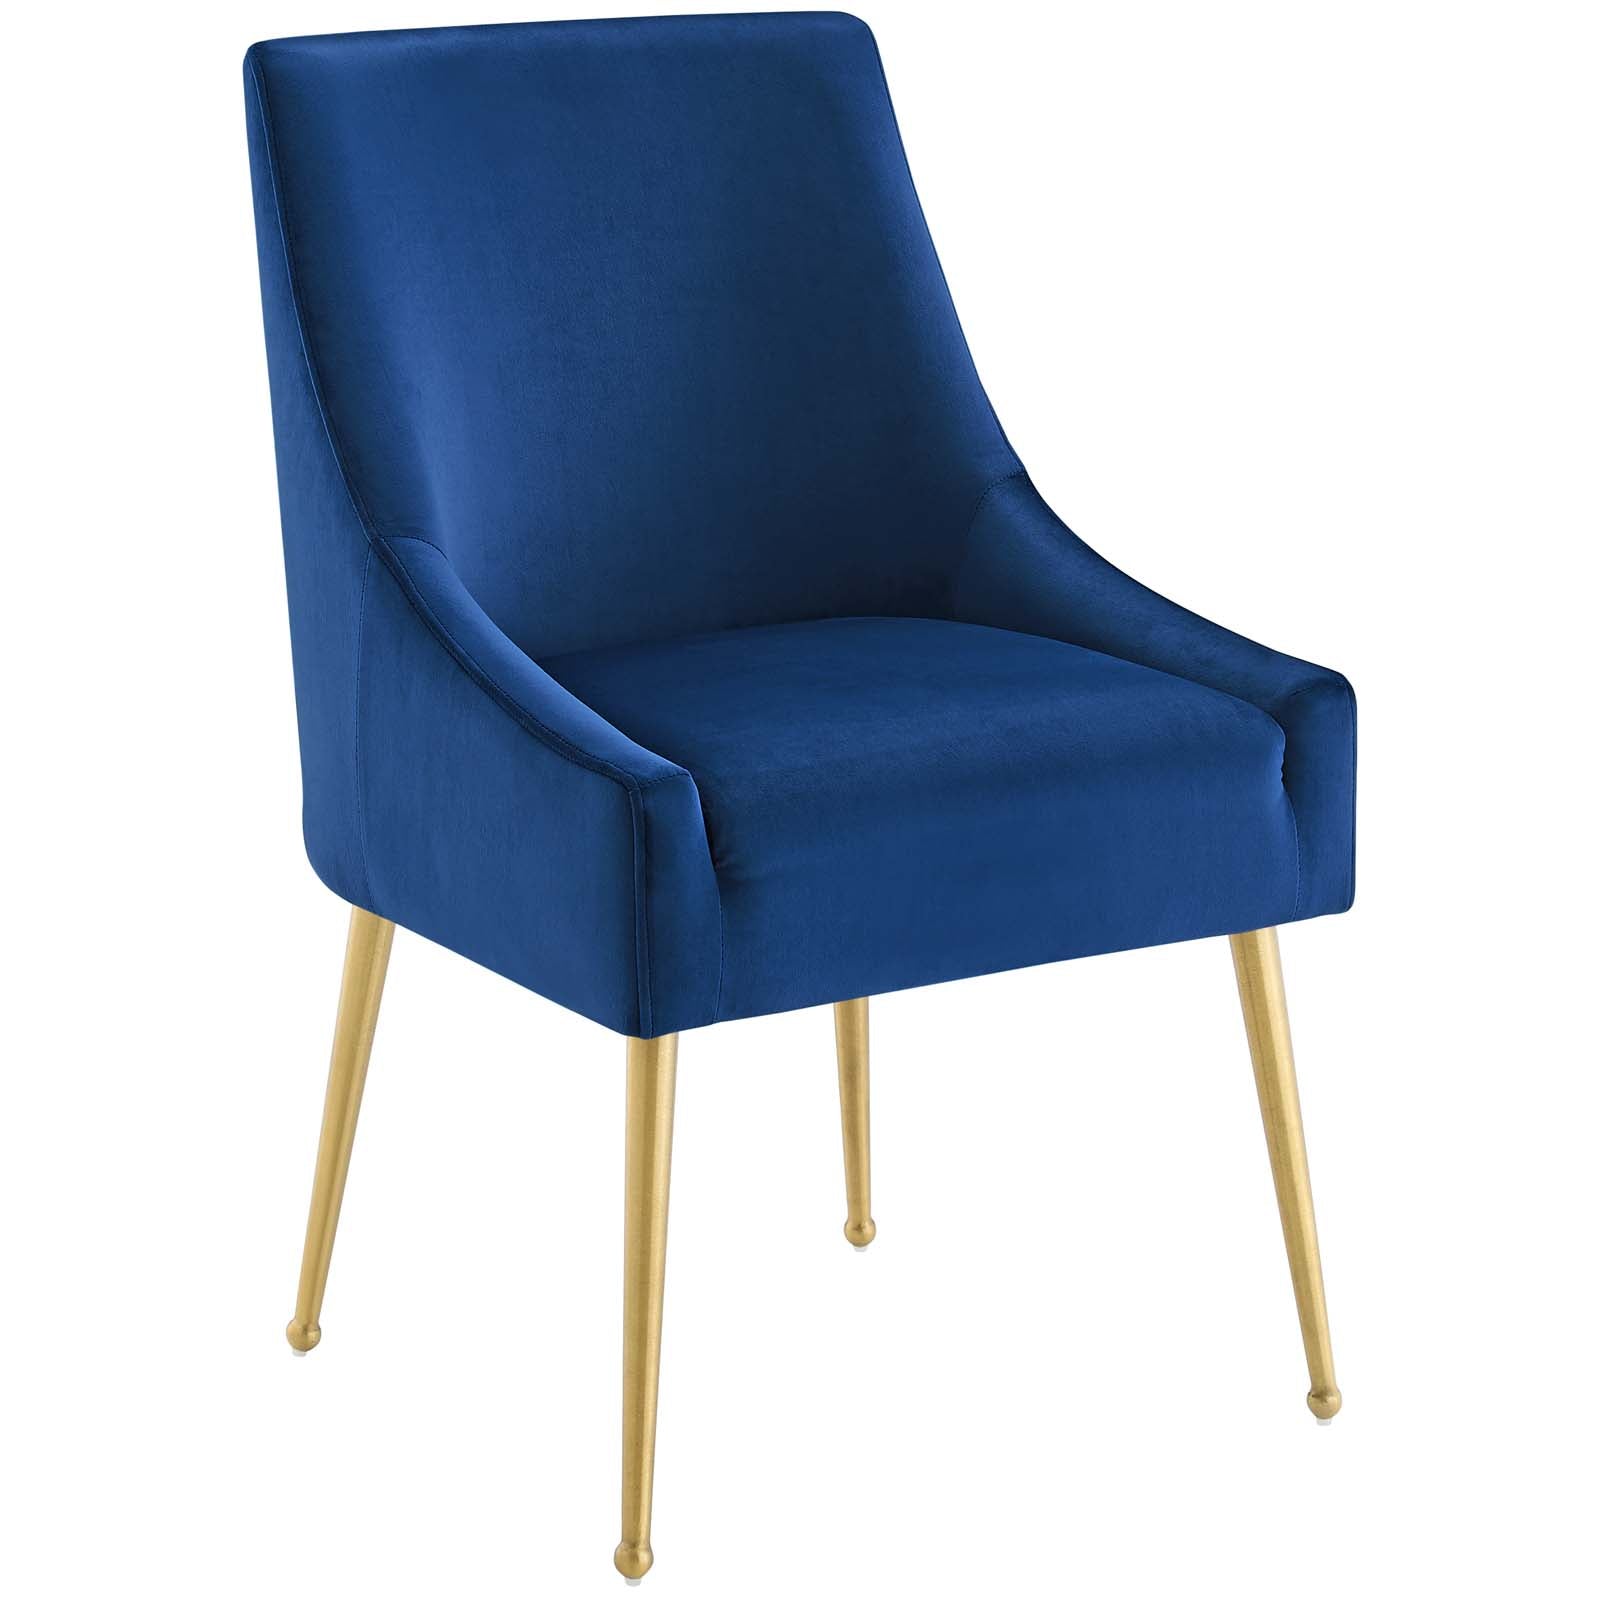 Discern Upholstered Performance Velvet Dining Chair - East Shore Modern Home Furnishings